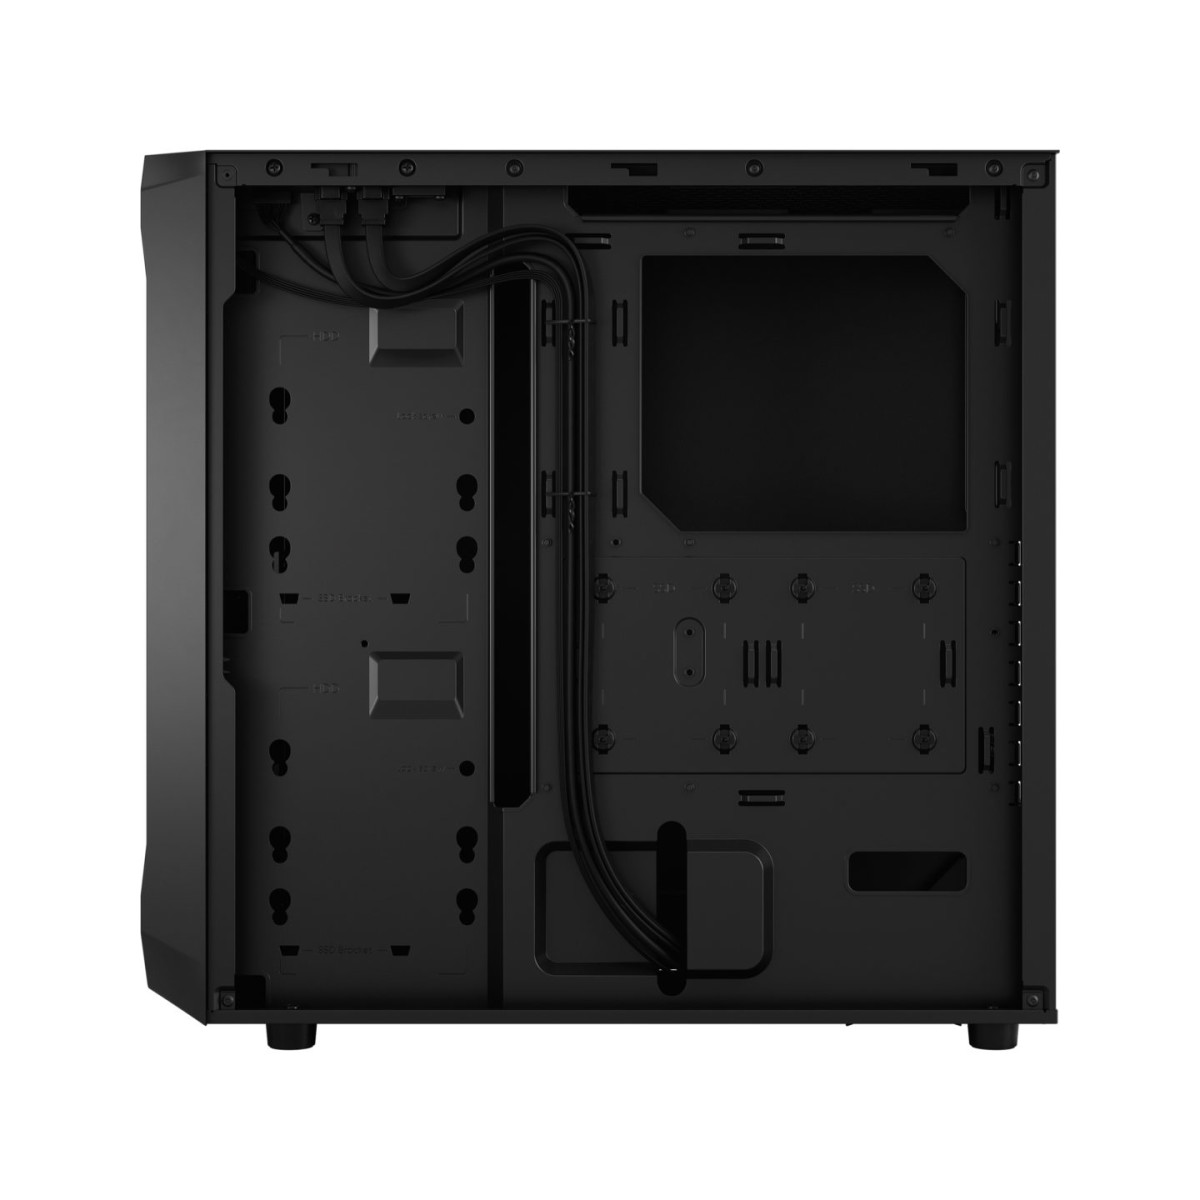 CASE ATX Focus 2 Black Solid